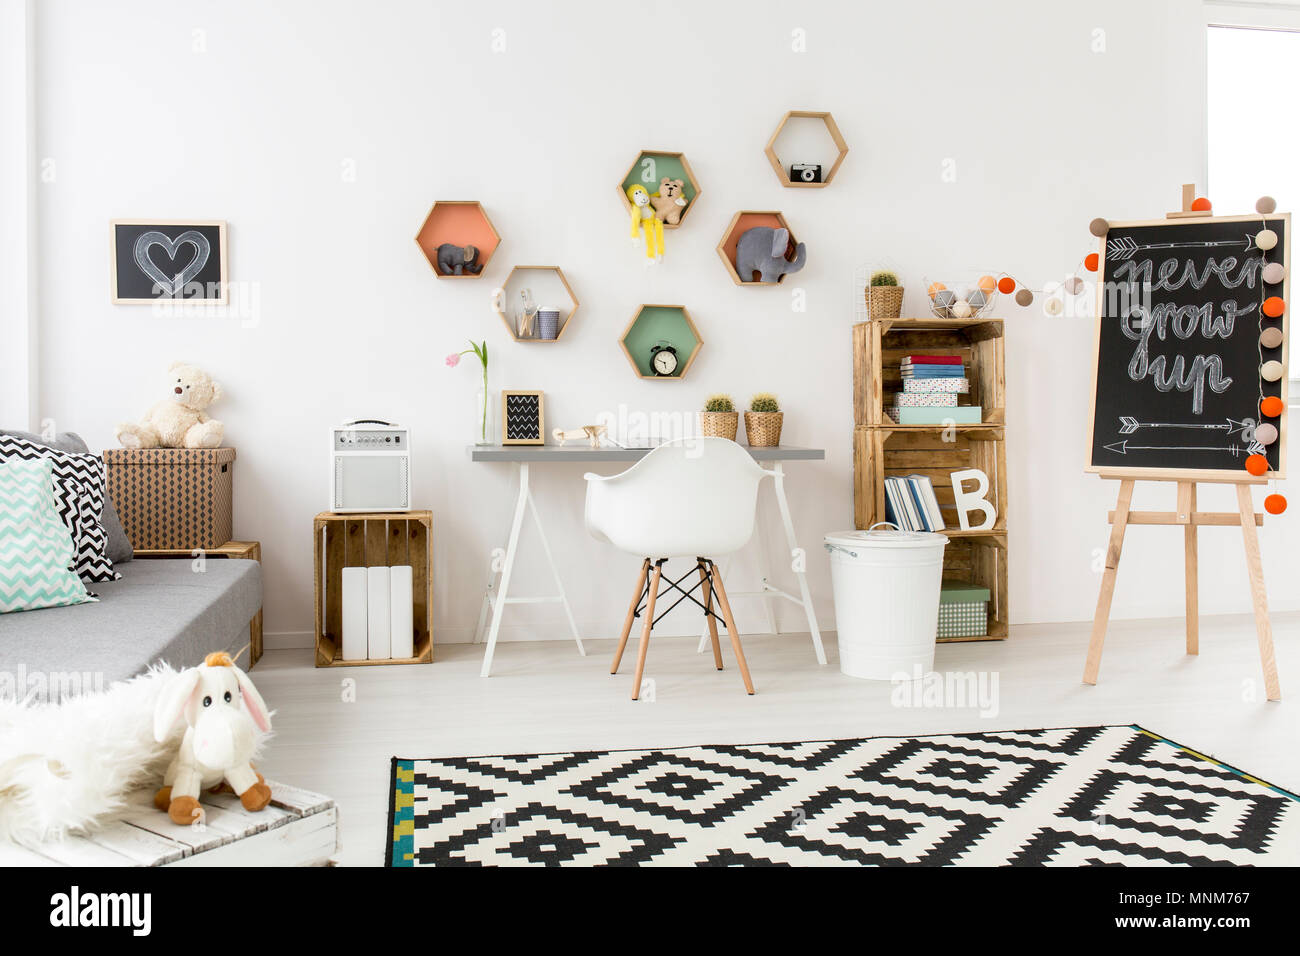 Shof eines modernen, kreativen Kinder Zimmer mit viel Zubehör und Spielzeug  Stockfotografie - Alamy